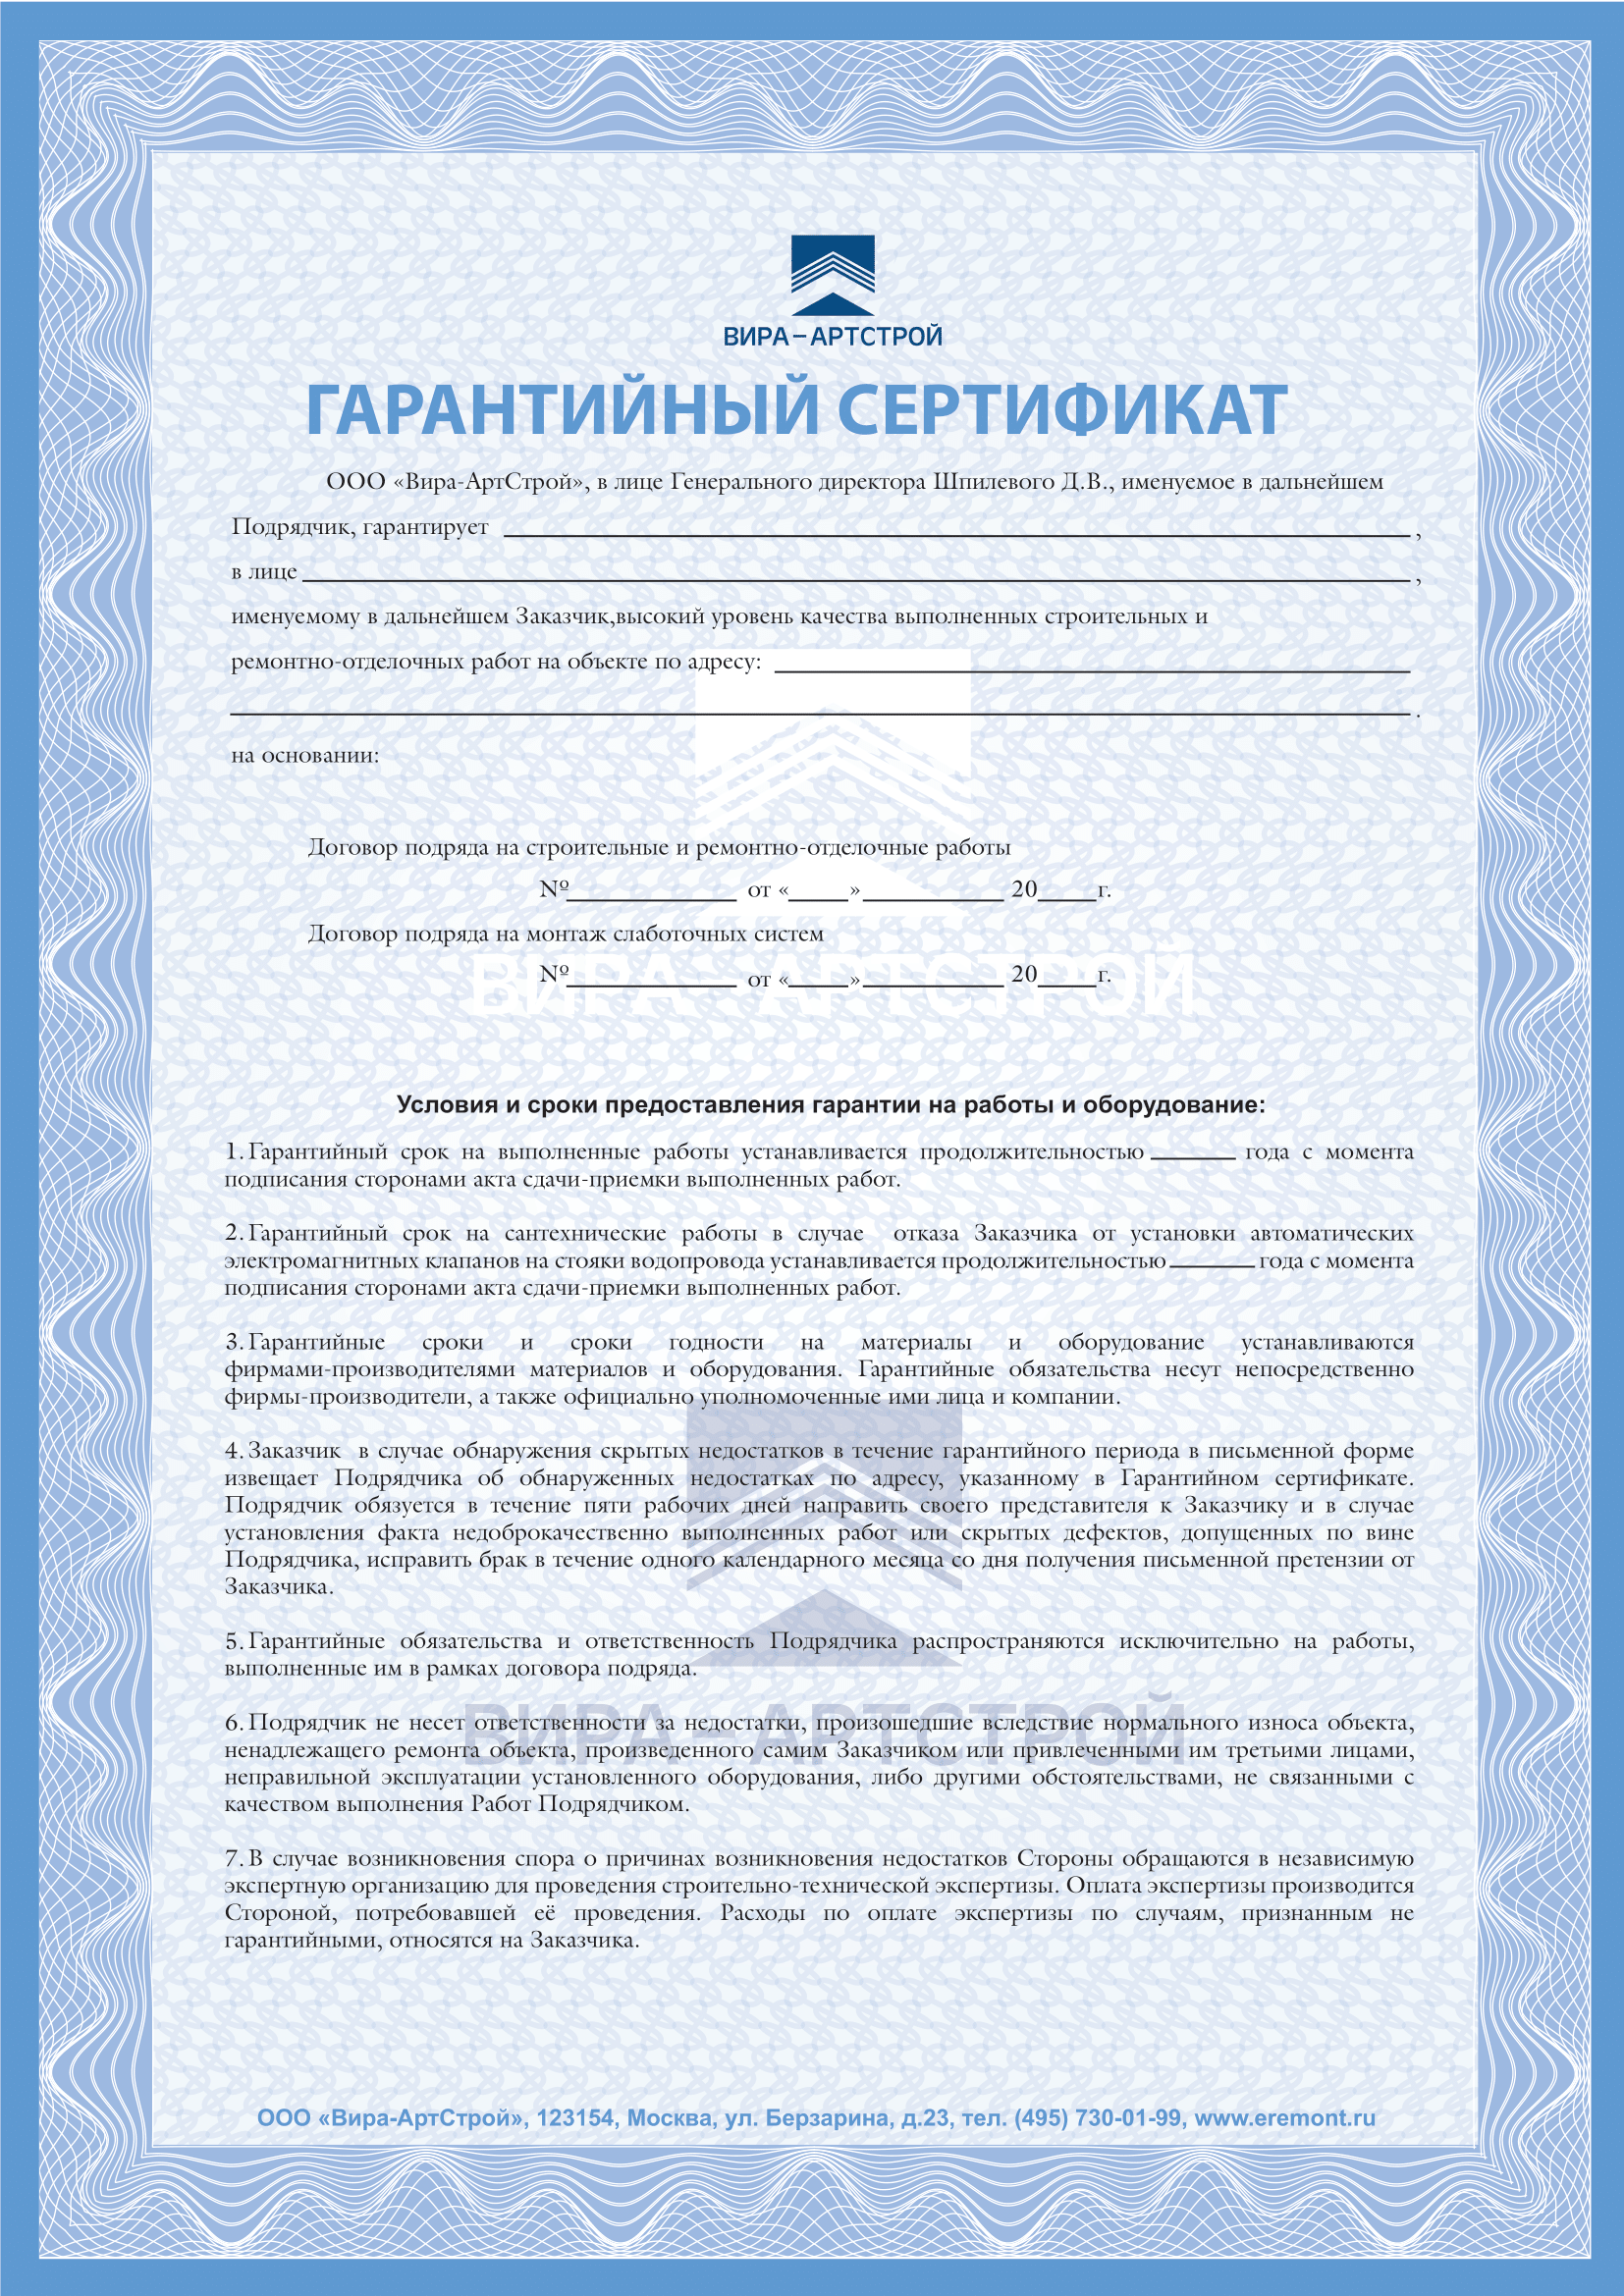 Гарантиный сертификат